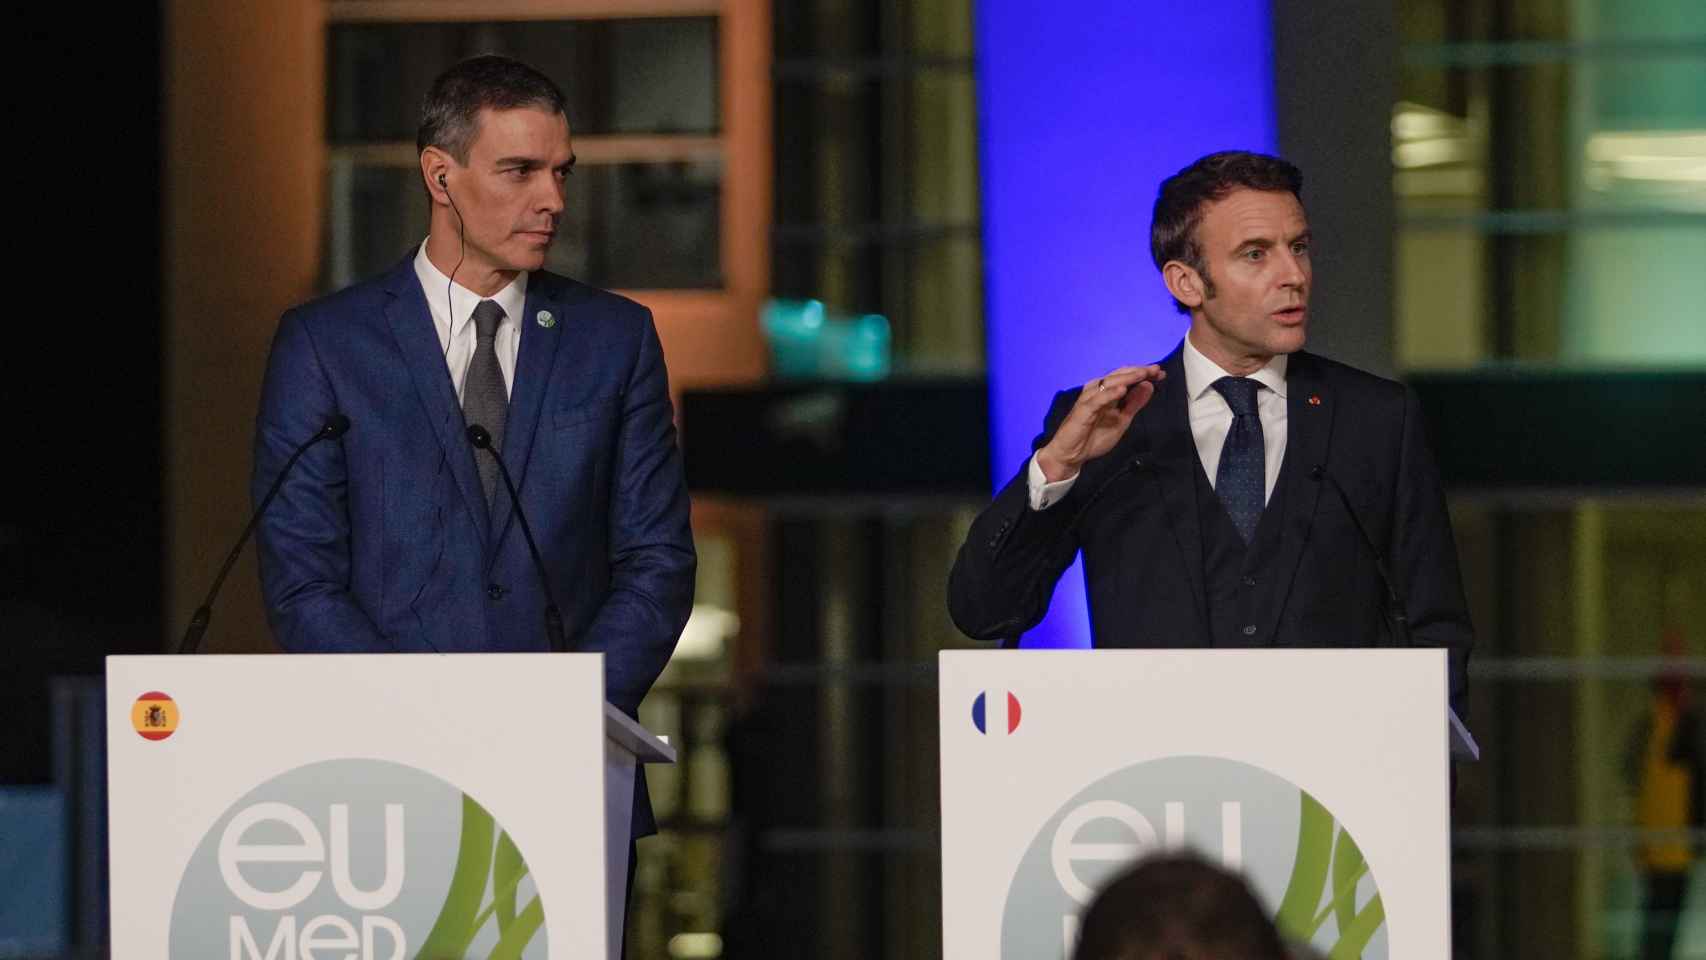 Pedro Sánchez y Emmanuel Macron durante la comparecencia tras la cumbre Eu-Med9 de Alicante